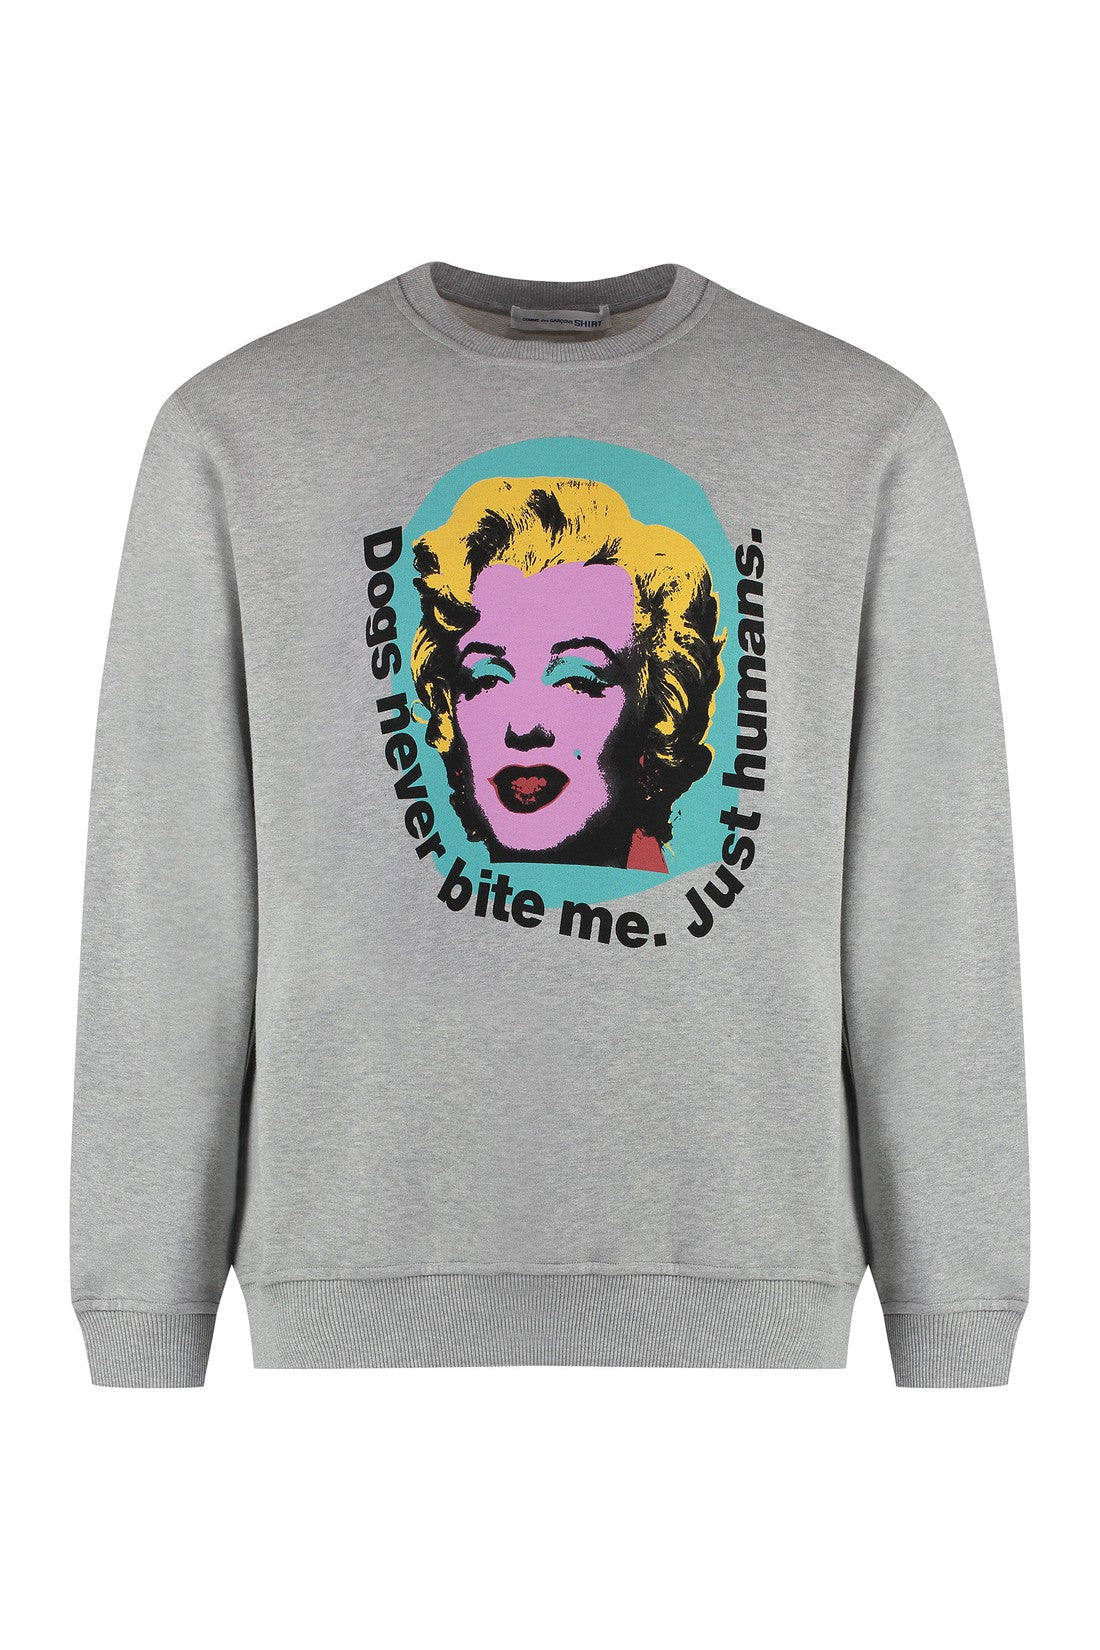 Comme des Garçons SHIRT-OUTLET-SALE-Andy Warhol print cotton sweatshirt-ARCHIVIST